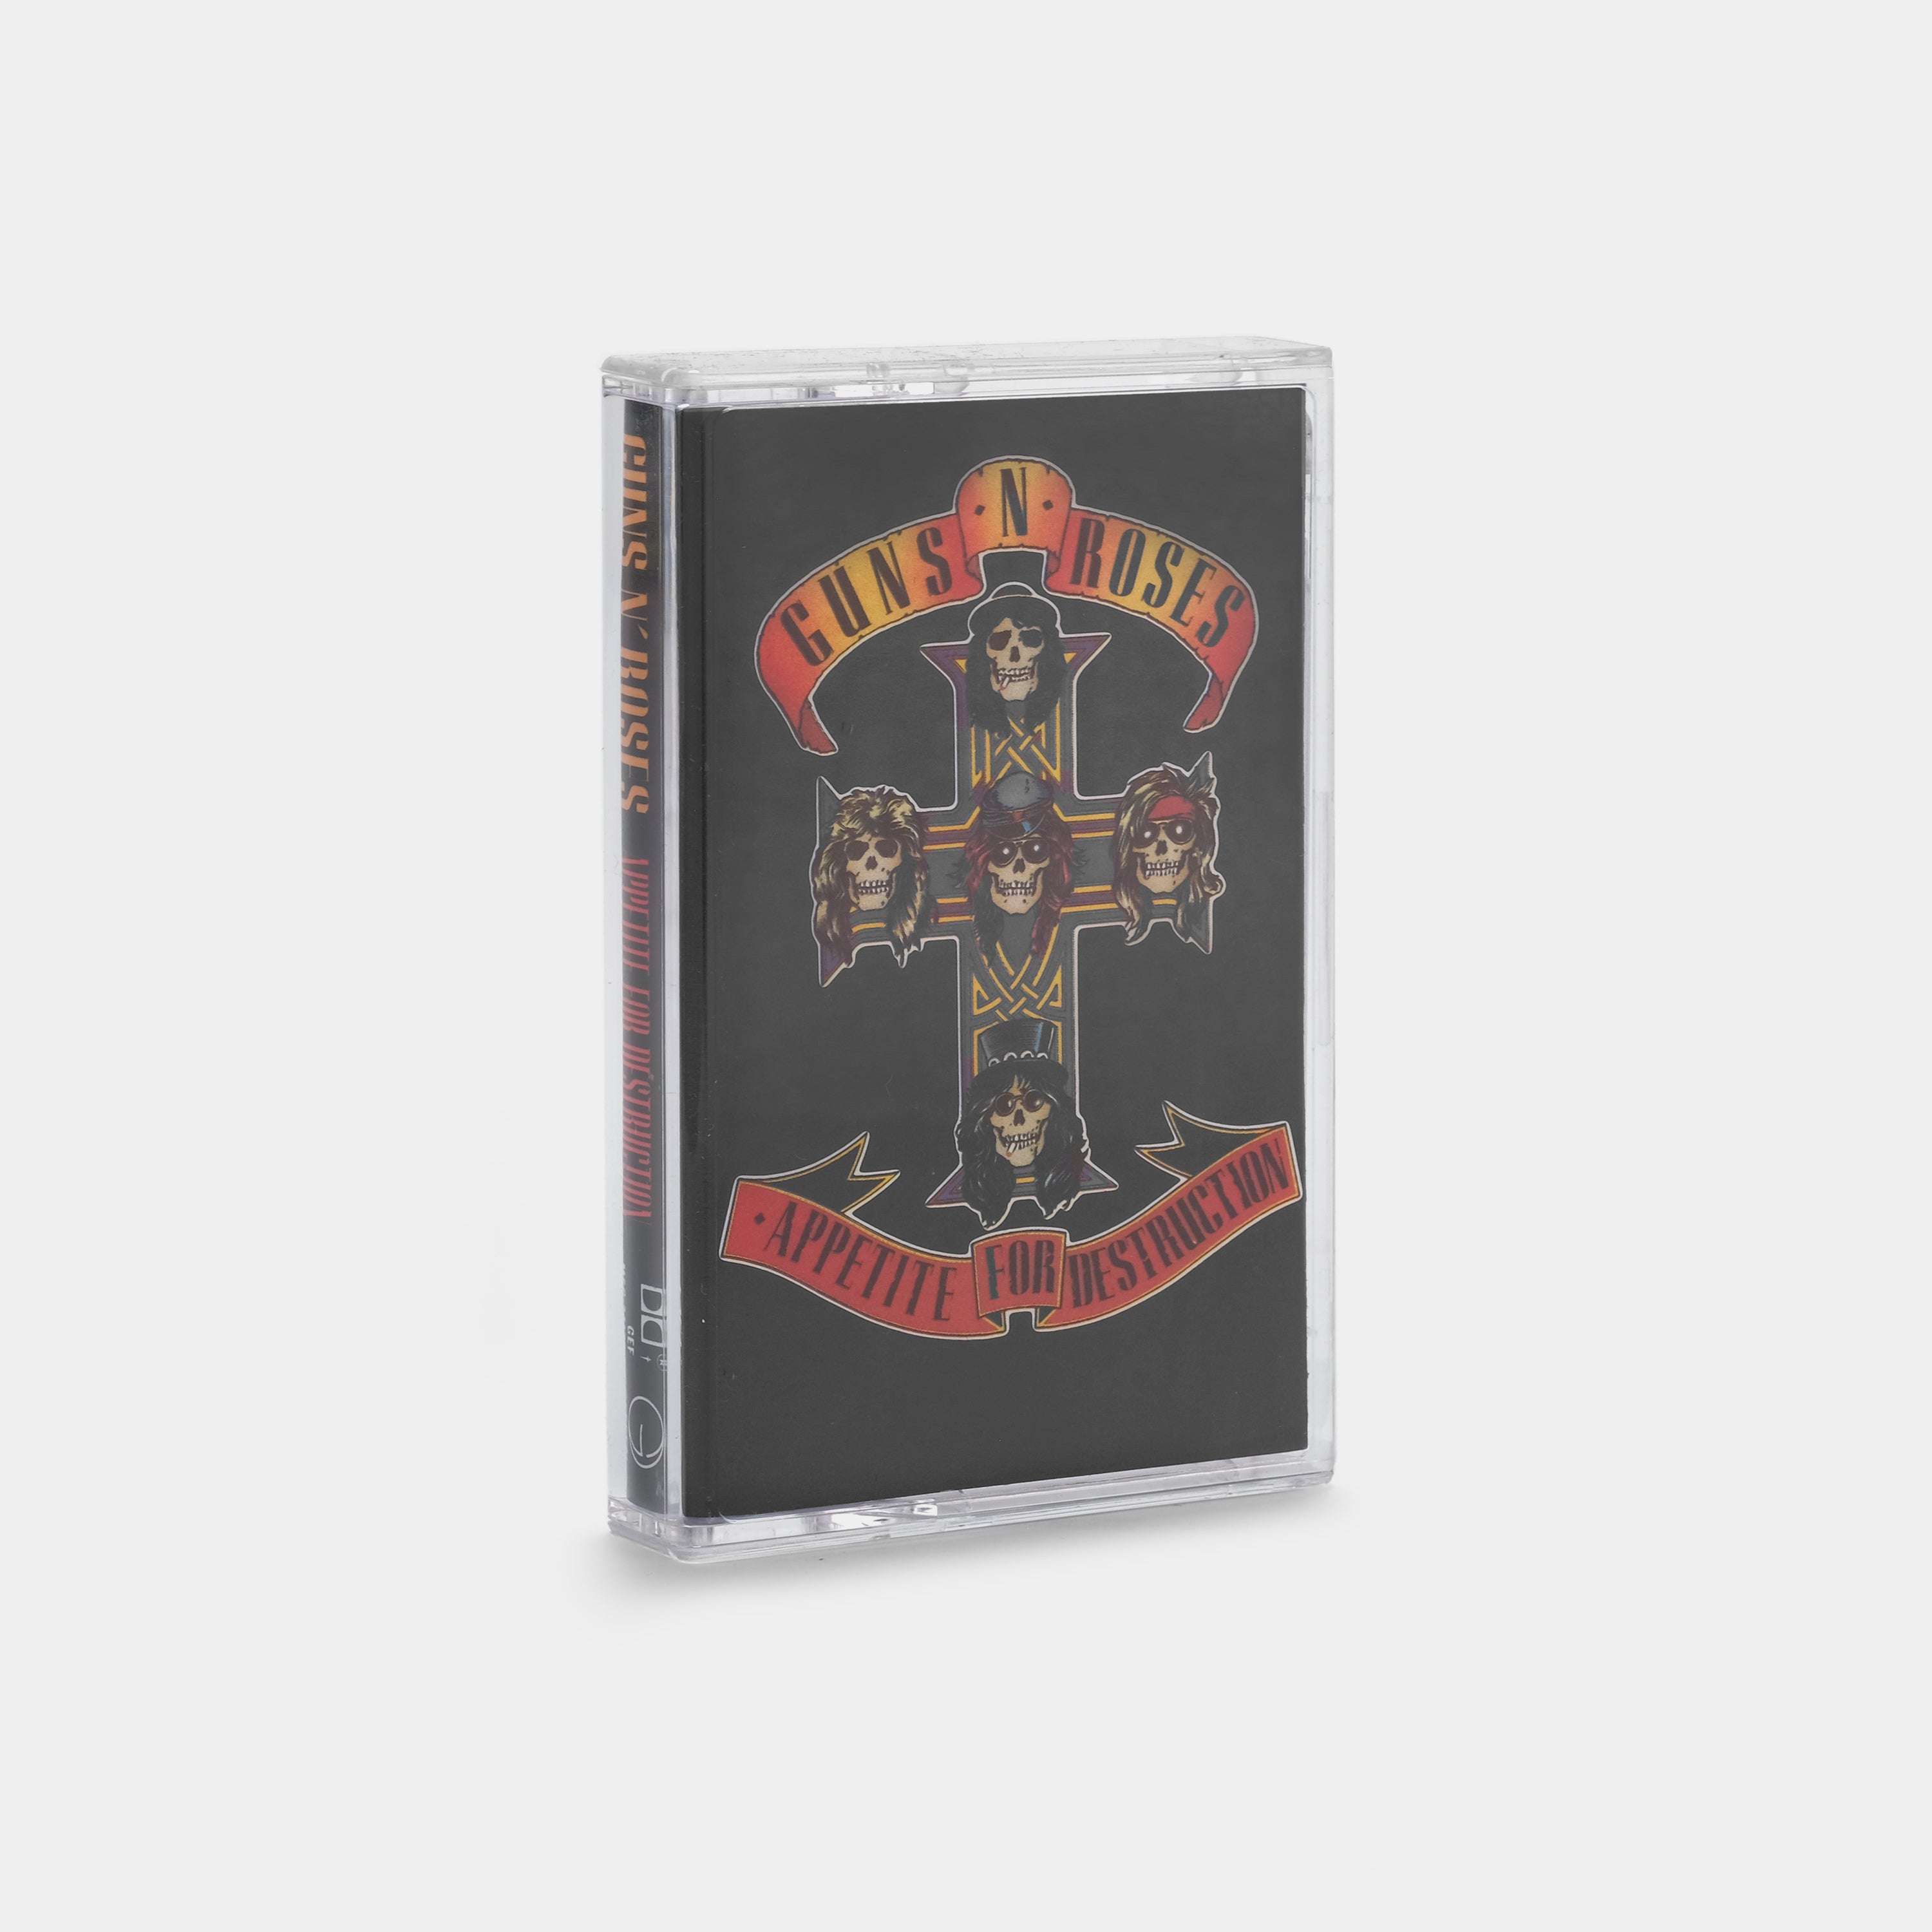 Guns N' Roses - Appetite for Destruction Cassette Tape